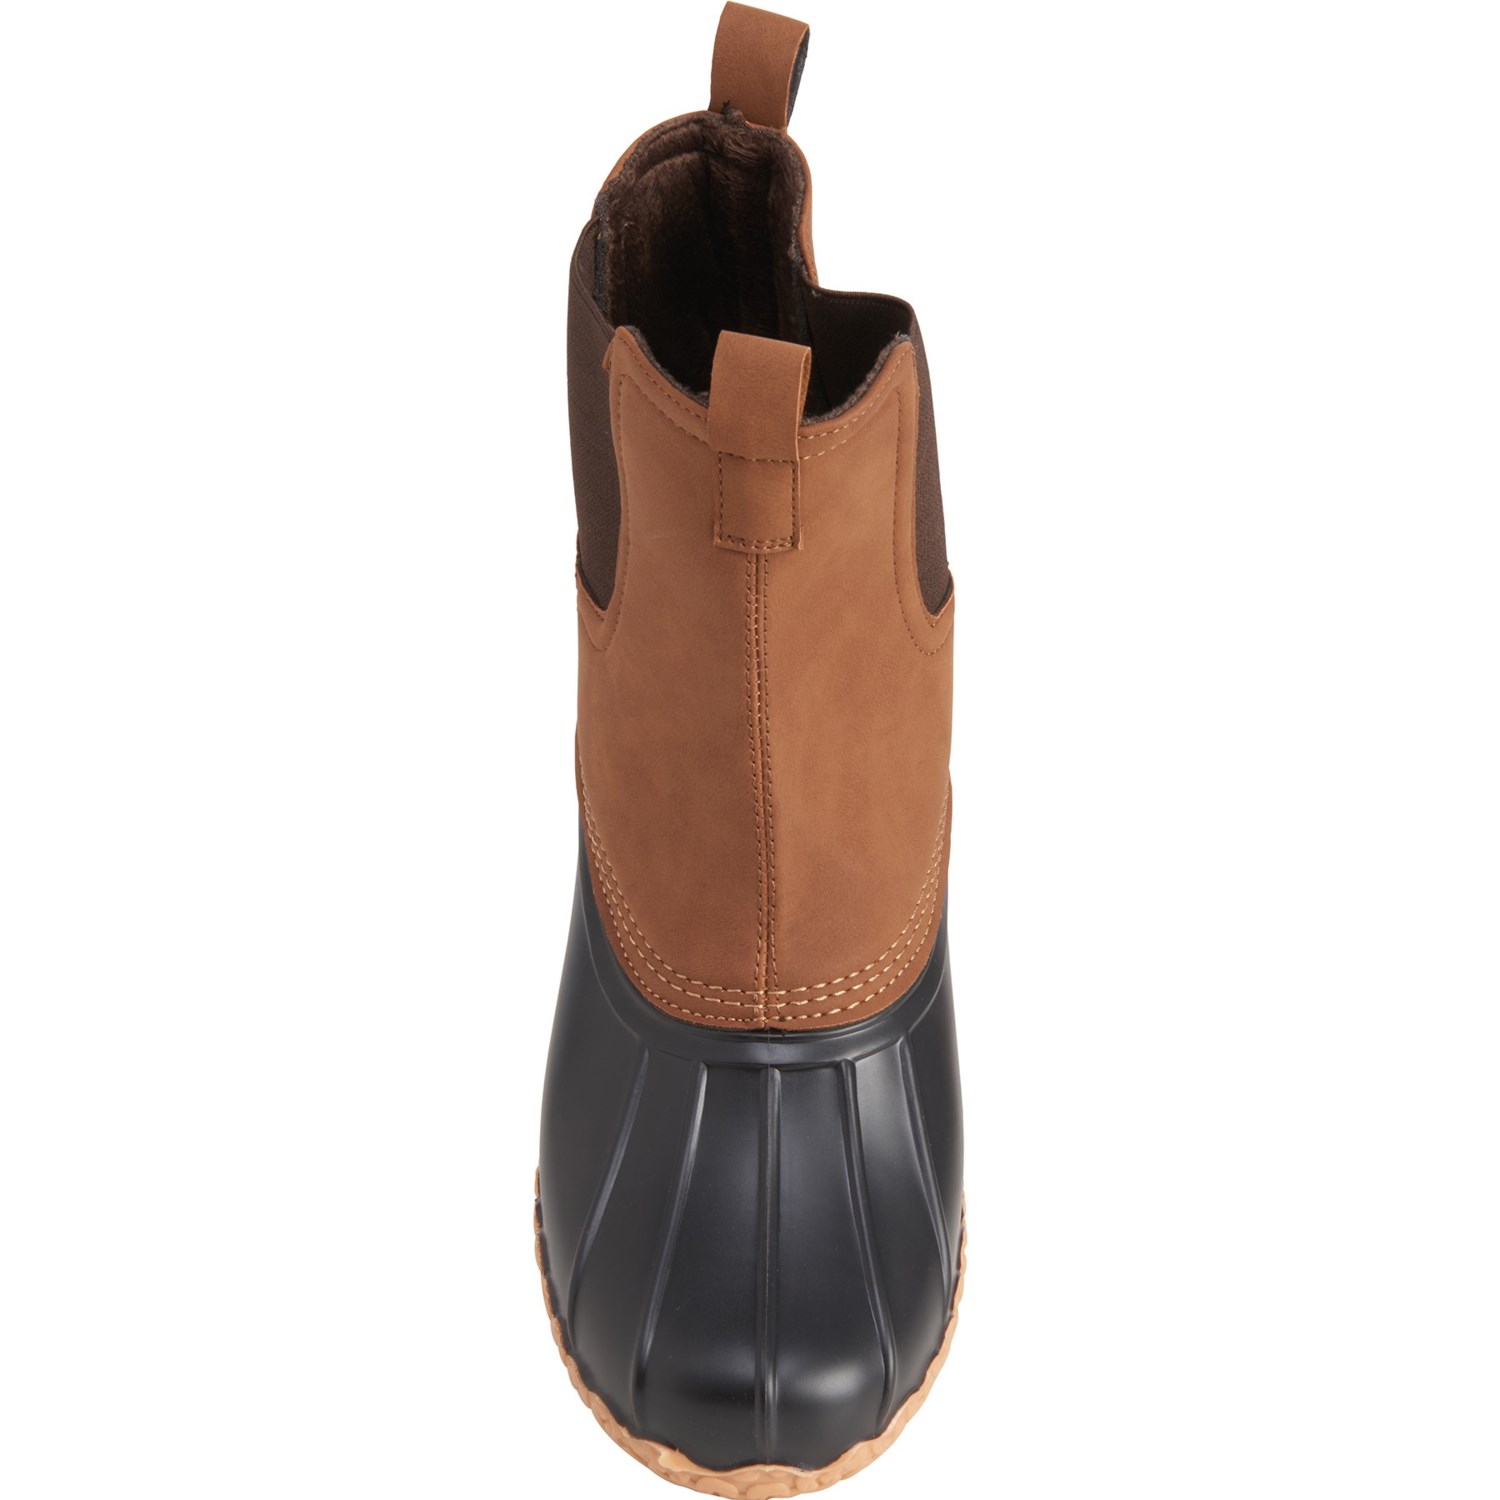 Khombu Alex Chelsea Duck Boots (For Men) - Save 51%